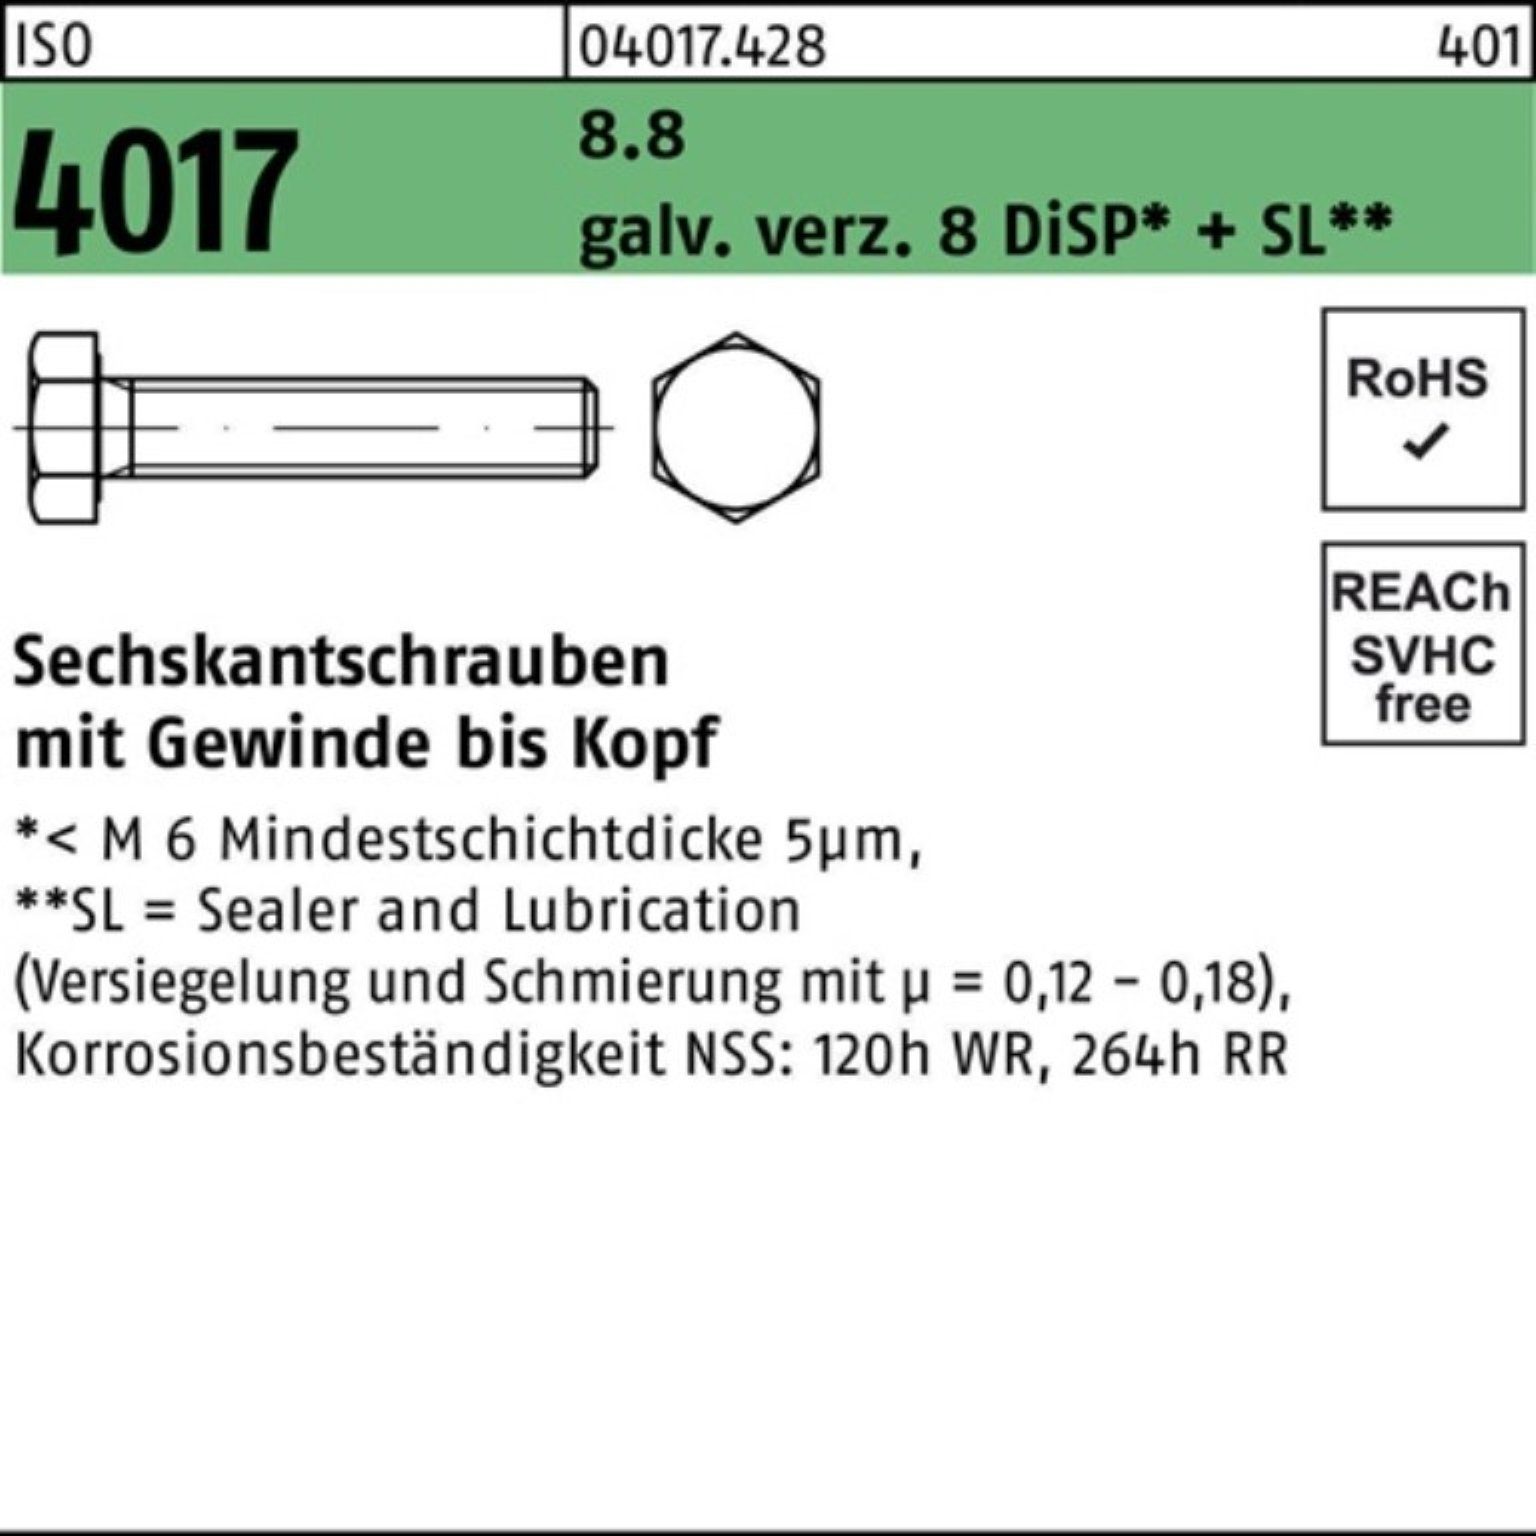 Sechskantschraube Pack 4017 DiSP 8 Sechskantschraube VG galv.verz. 8.8 80 100er Bufab ISO M12x